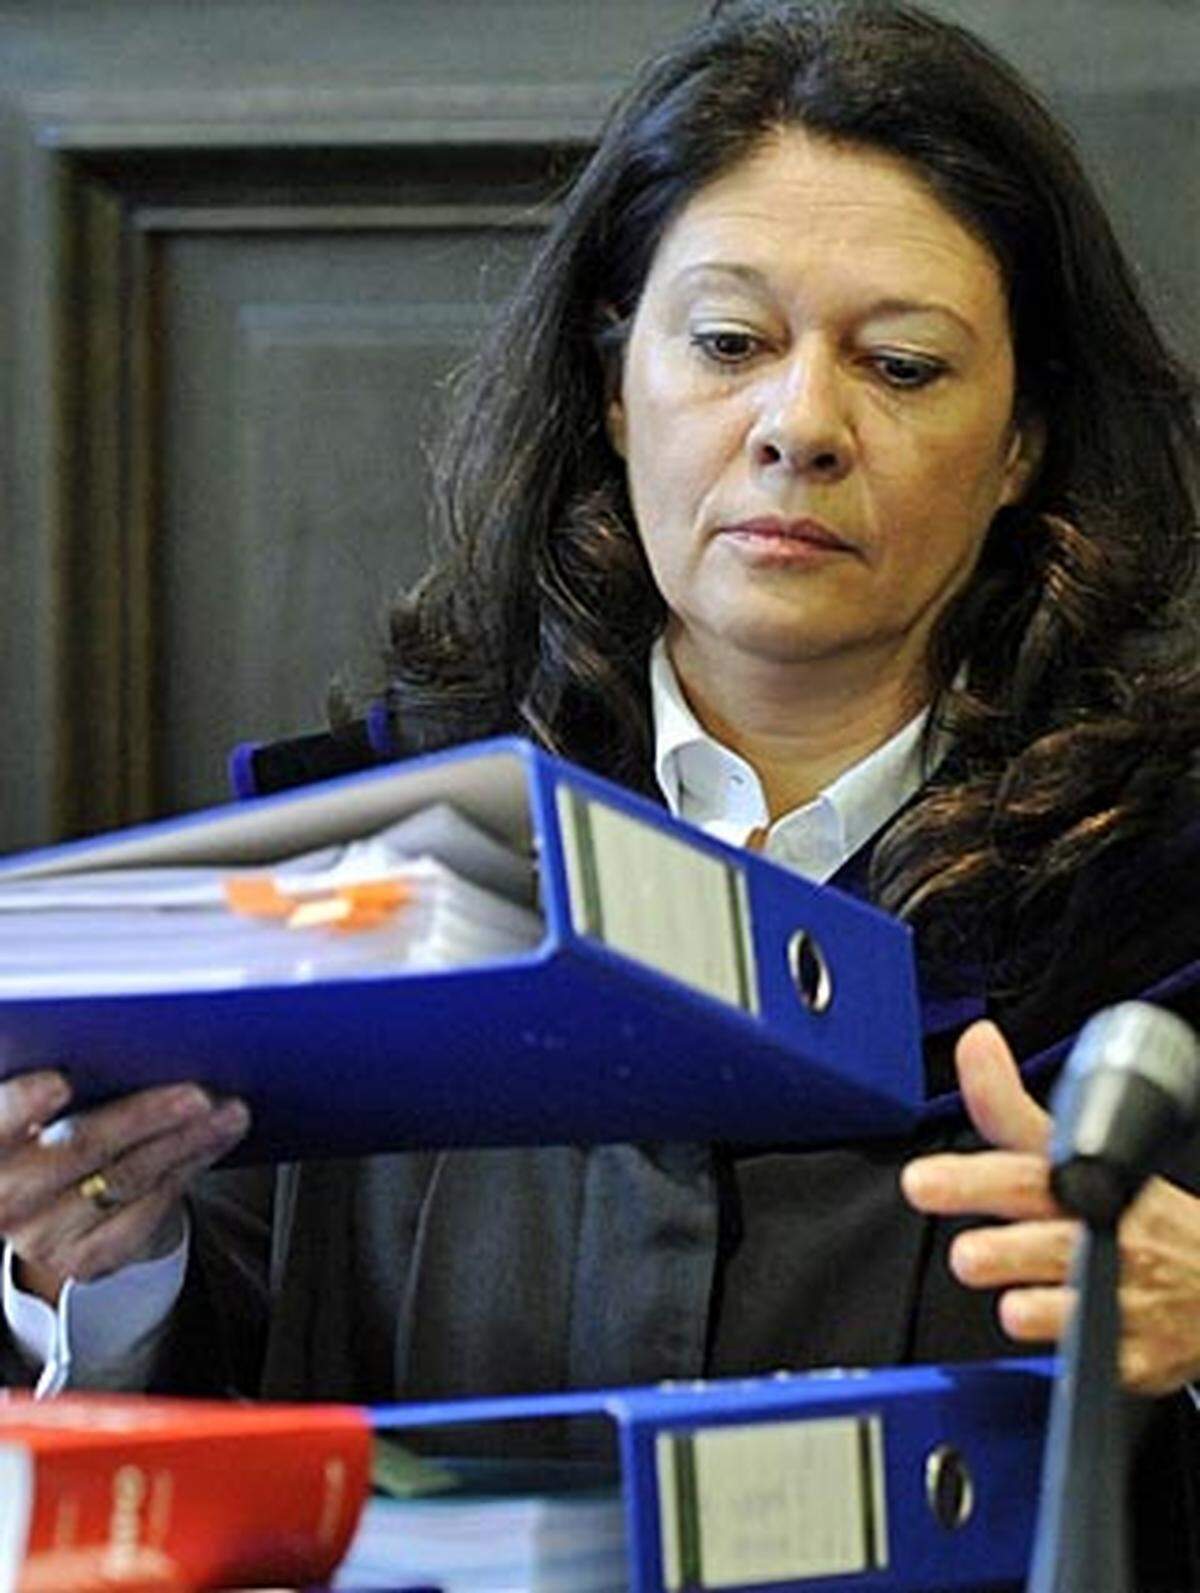 Richterin ANDREA HUMER ist seit 1998 am Landesgericht St. Pölten tätig und gilt als souveräne Richterin und Expertin für Sexualstrafrecht.